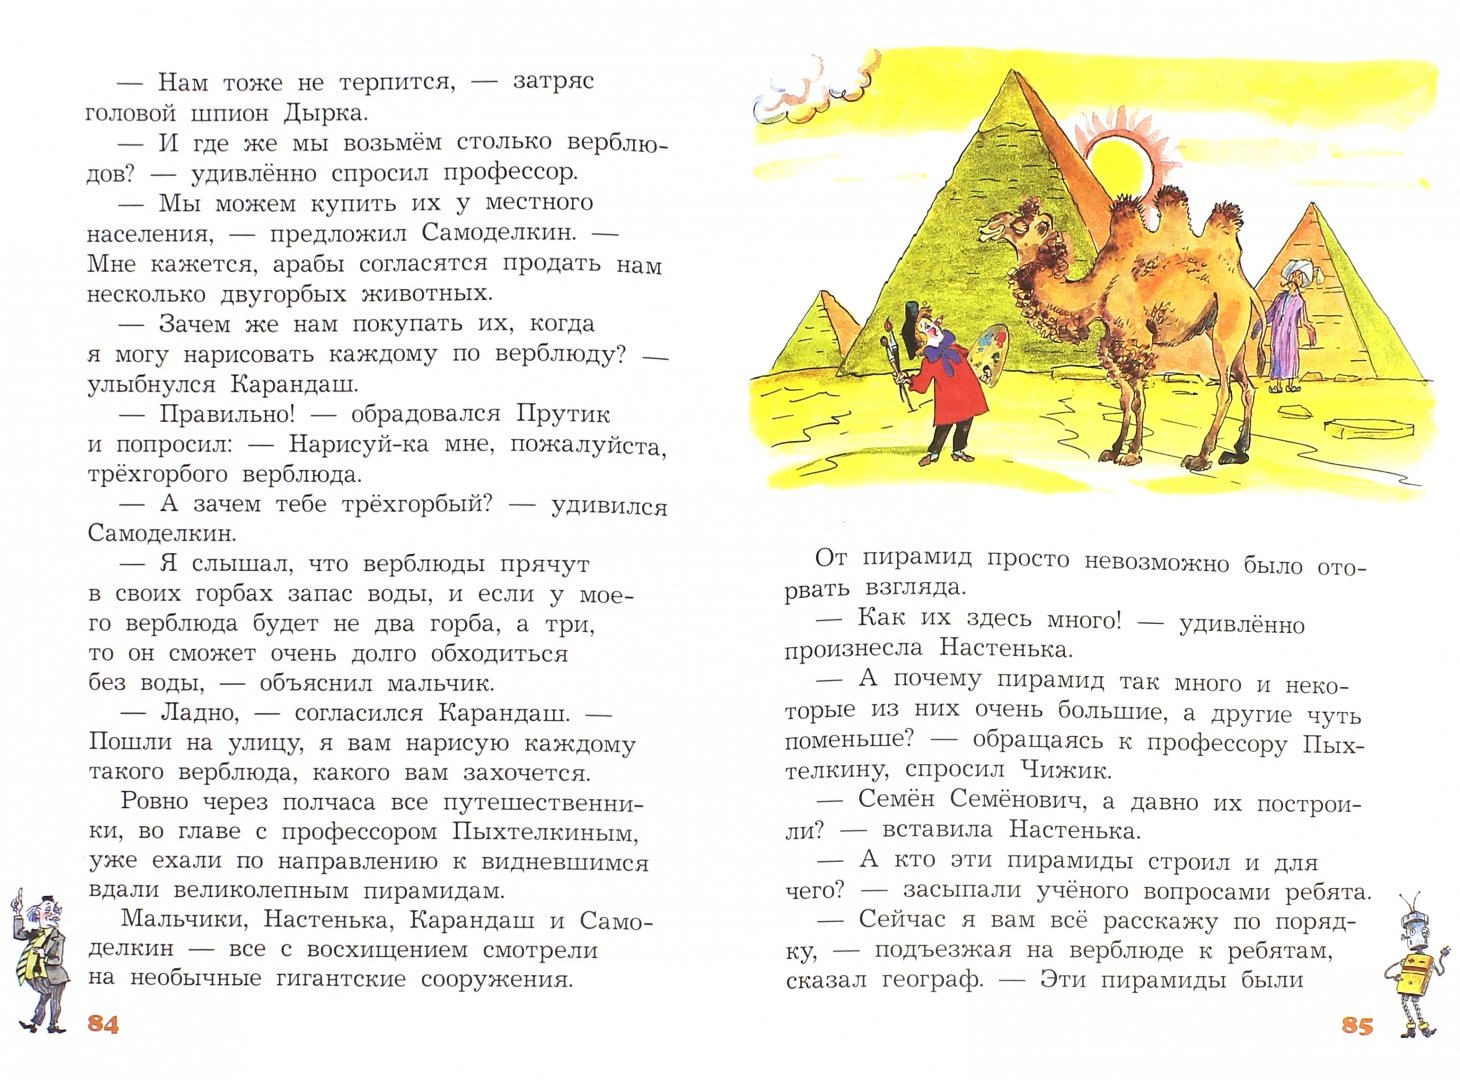 Иллюстрация 1 из 10 для Карандаш и Самоделкин в стране пирамид - Валентин Постников | Лабиринт - книги. Источник: Лабиринт